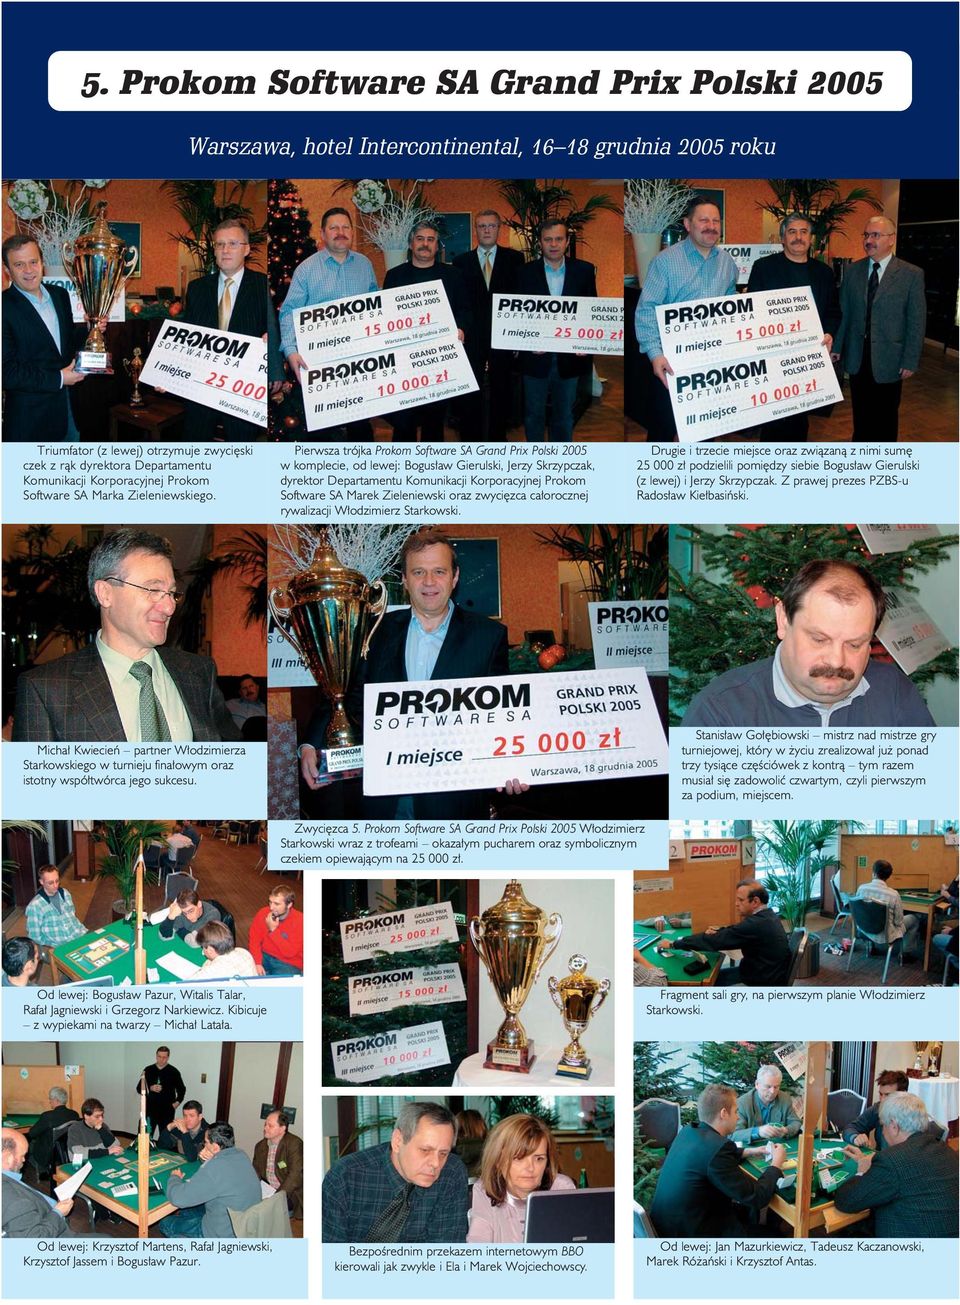 Pierwsza trójka Prokom Software SA Grand Prix Polski 2005 w komplecie, od lewej: Bogus aw Gierulski, Jerzy Skrzypczak, dyrektor Departamentu Komunikacji Korporacyjnej Prokom Software SA Marek